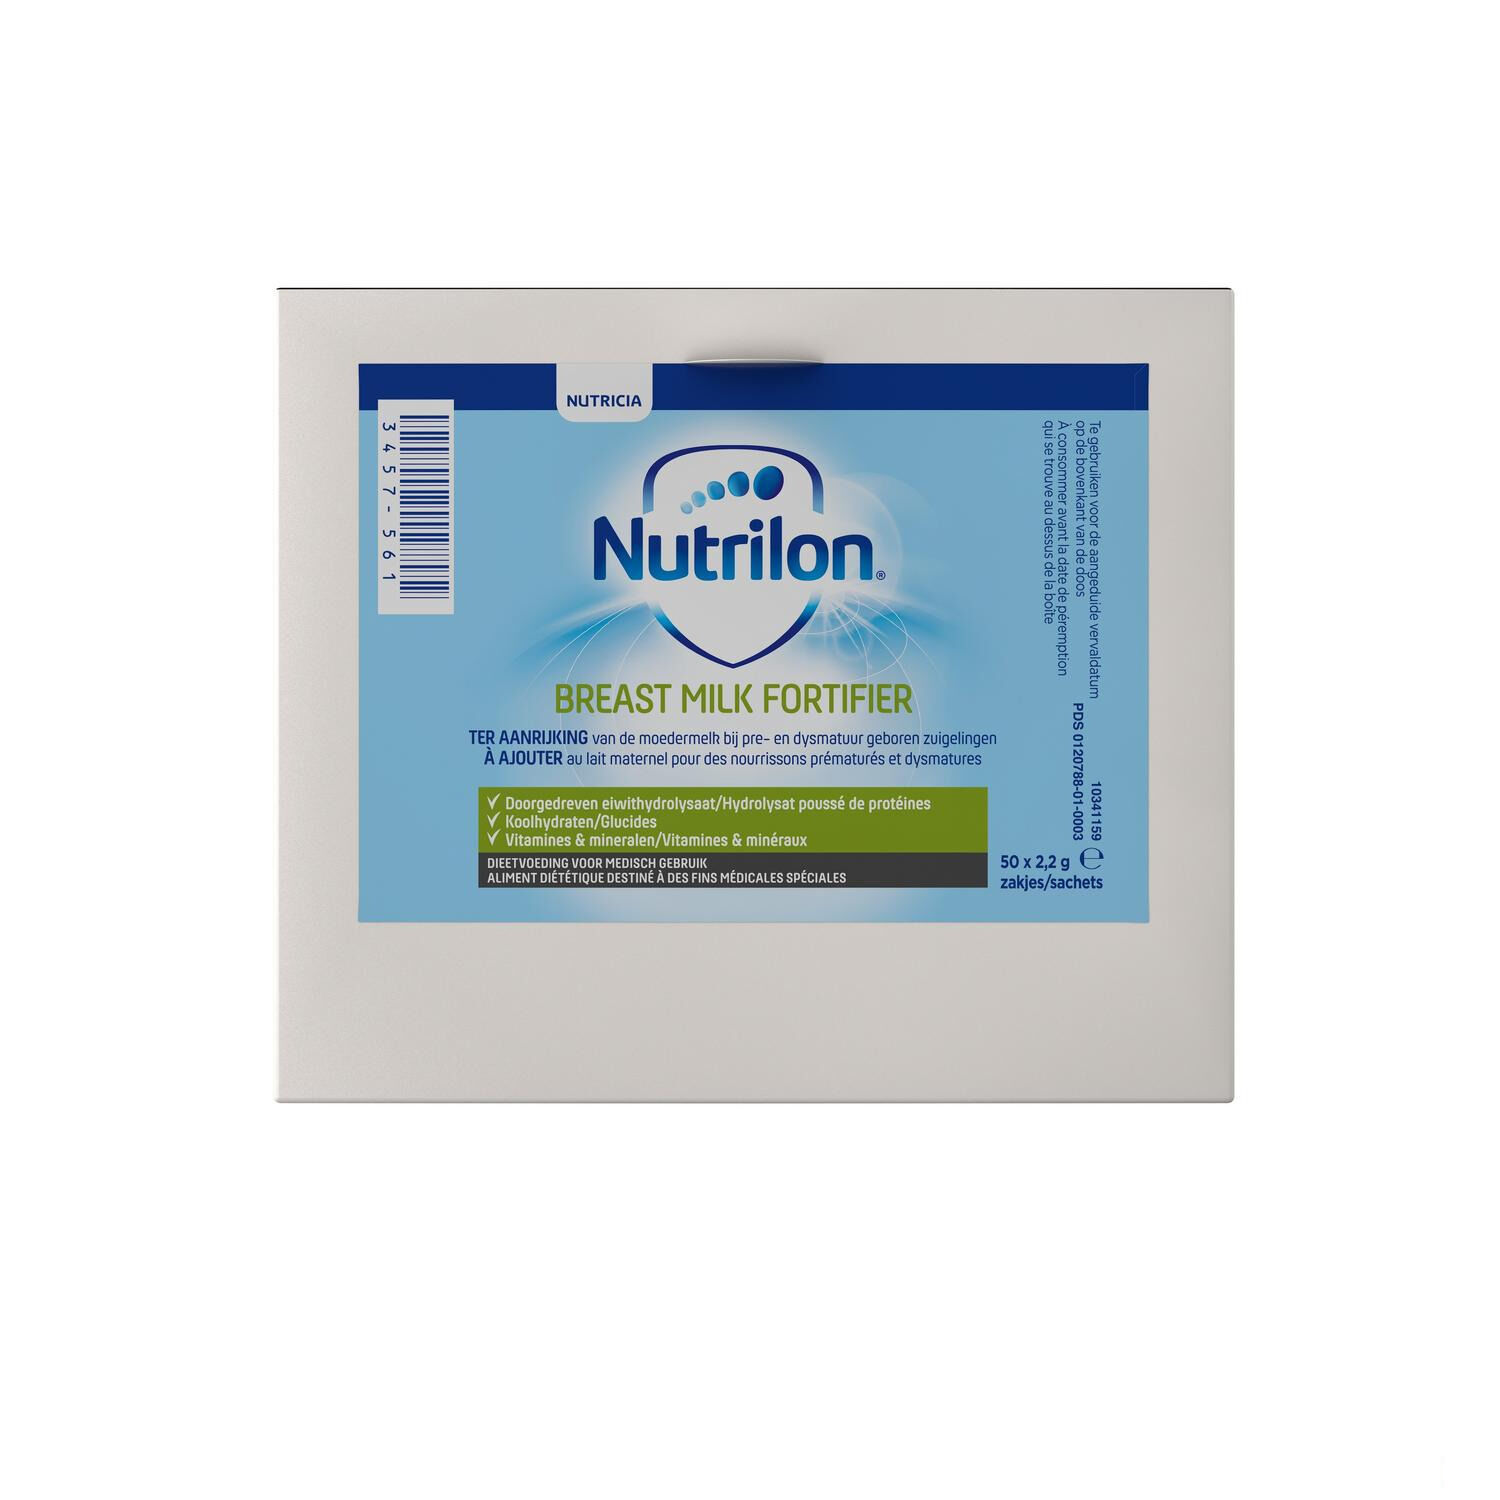 NUTRILON Nutricia Nutrilon BMF 2.2 g 50 Sachets